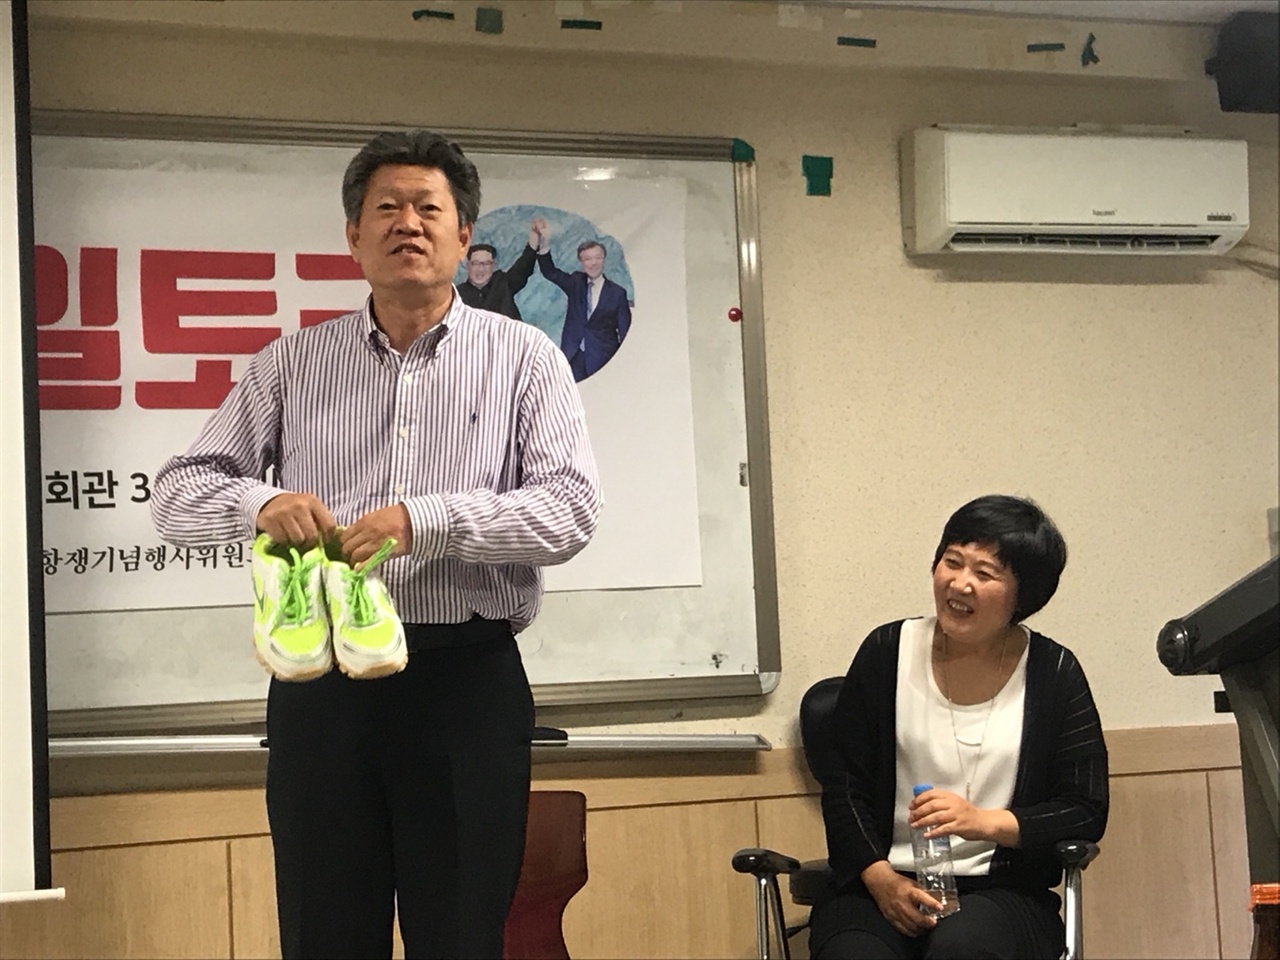 북한에서 가져온 신발을 소개하고 있다. 1만 원도 되지 않지만 신발 품질이 놀랍다고 한다. 신발의 상표에는 'Made In DPRK(Democratic People's Republic of Korea)'라고 적혀있다.